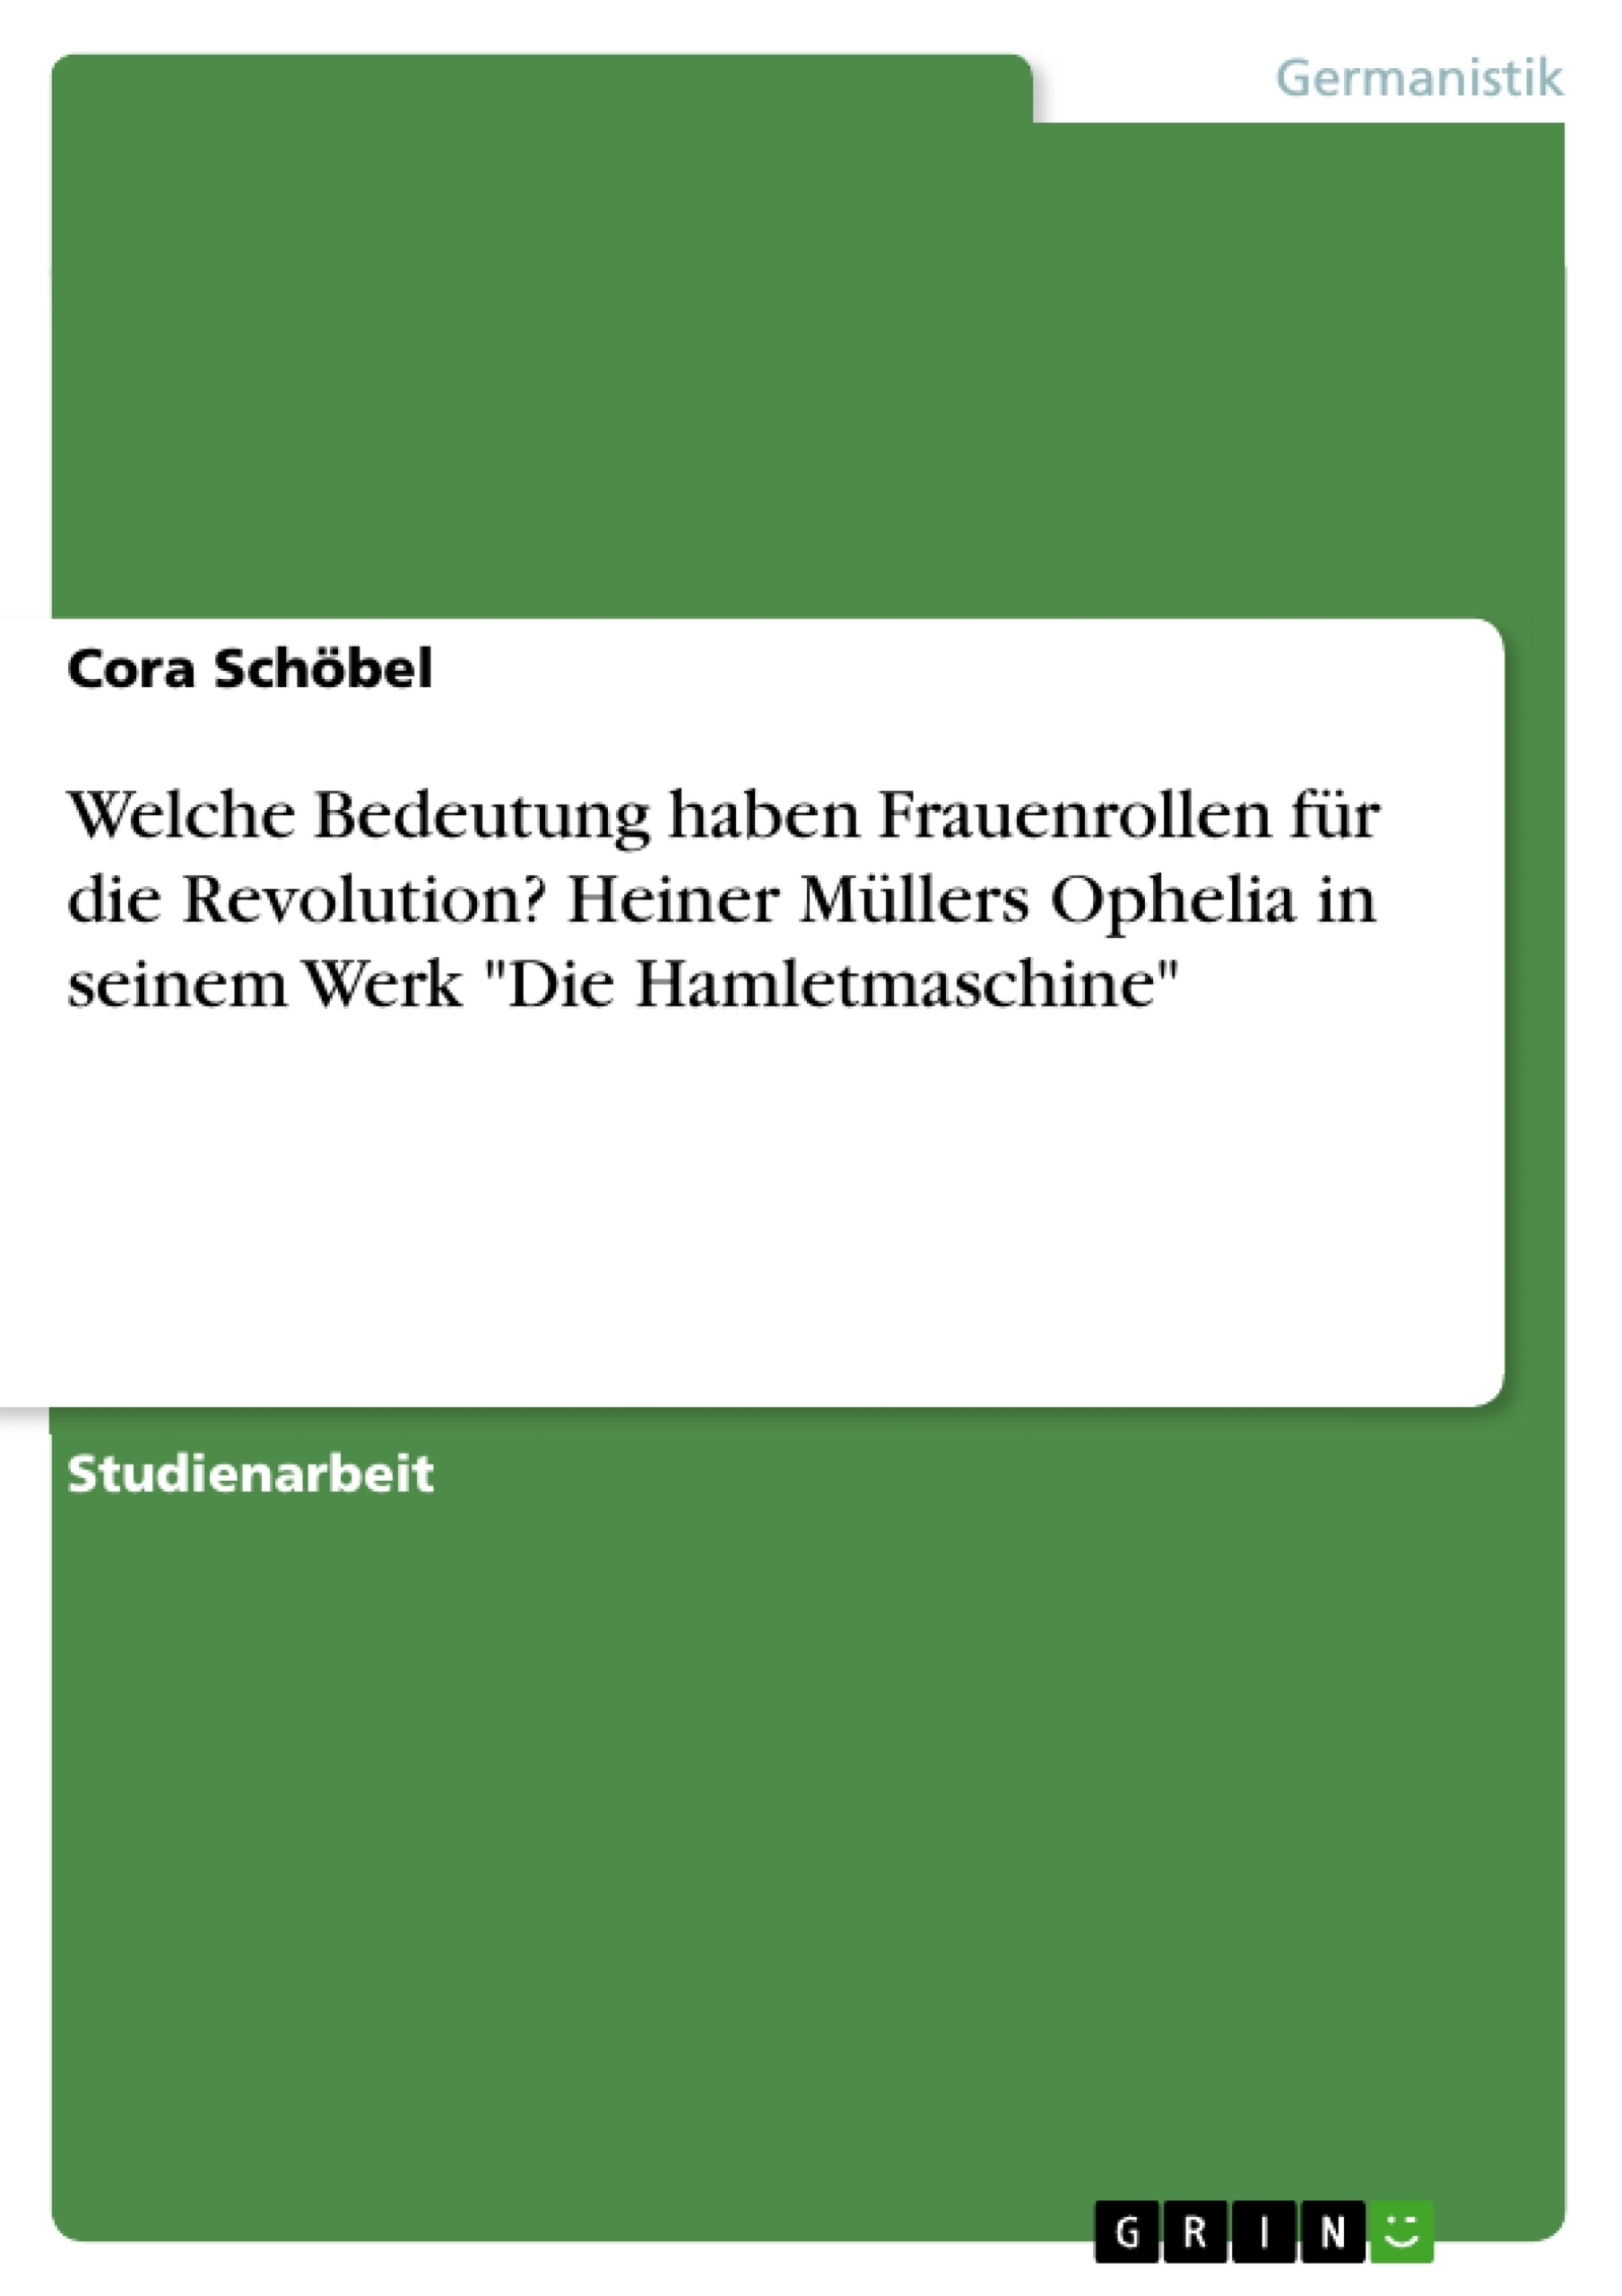 Title: Welche Bedeutung haben Frauenrollen für die Revolution? Heiner Müllers Ophelia in seinem Werk "Die Hamletmaschine"